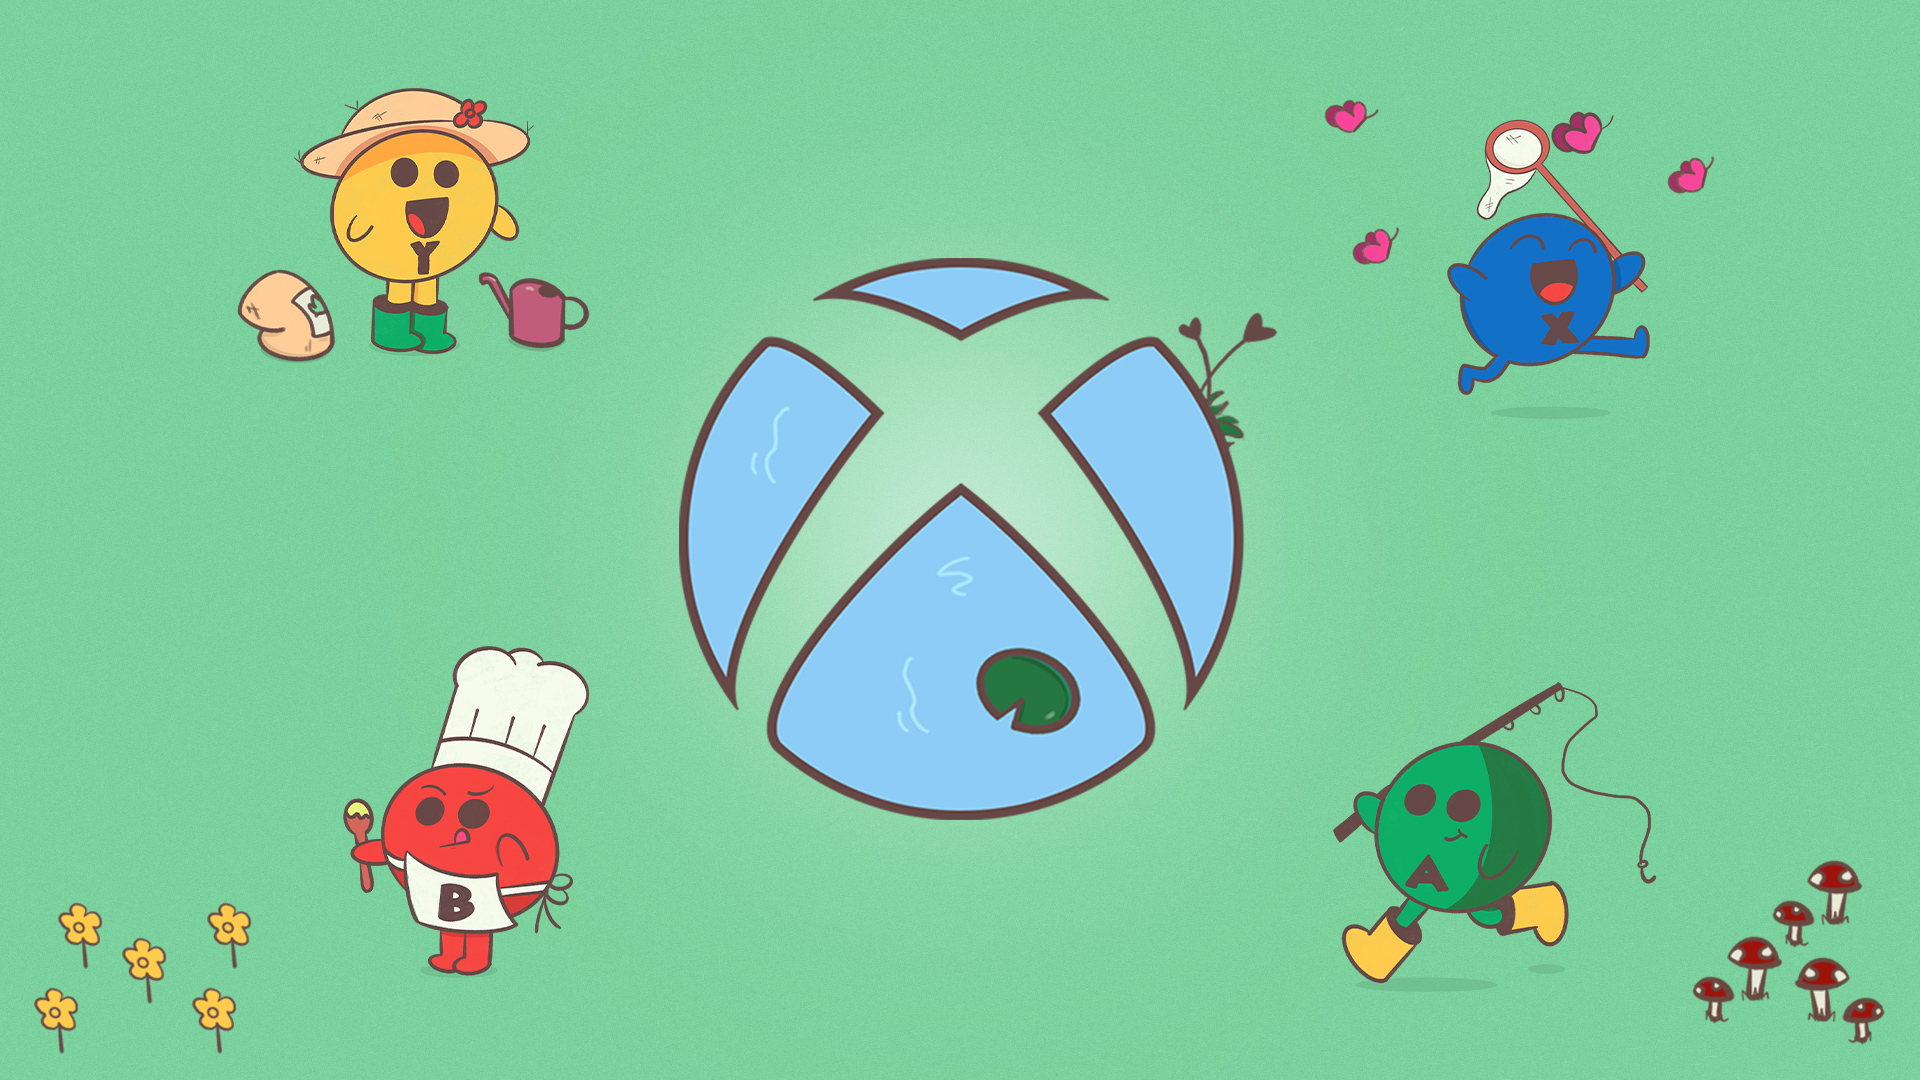 A esfera de Xbox em estilo de desenho animado em um fundo de lagoa azul, uma vitória-régia verde na pétala inferior e juncos na pétala superior direita. A esfera é cercada por quatro caracteres de botão. O botão vermelho “B” está usando um chapéu de chef branco e segurando uma colher de pau, o botão “Y” amarelo tem um saco de terra e um regador, o botão “X” azul está perseguindo borboletas cor de rosa com uma rede e o botão “A” verde está segurando uma vara de pescar.